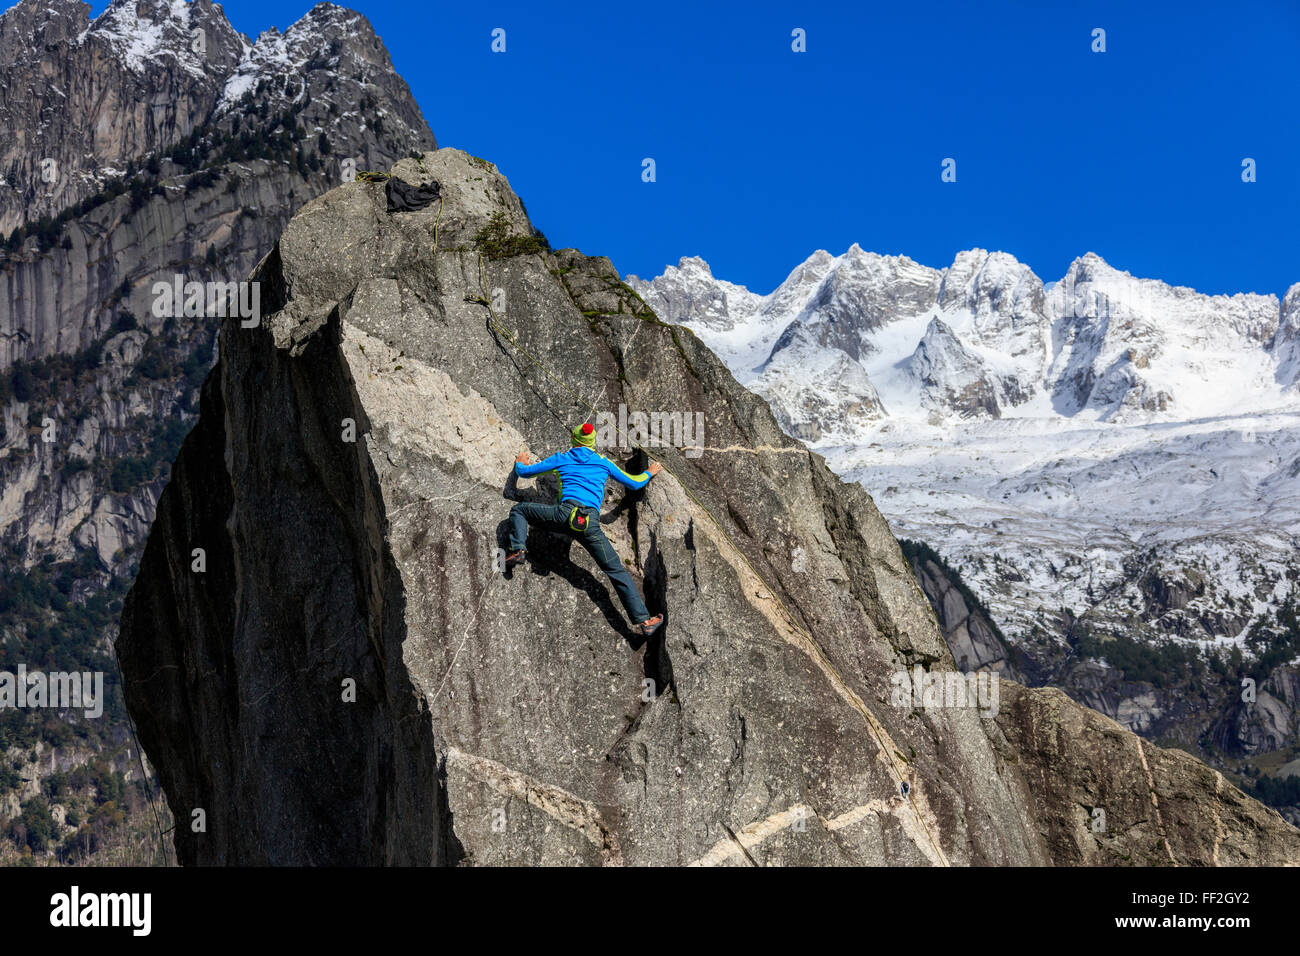 CRMimber auf steilen Felswand im Hintergrund bRMue Himmel und schneebedeckten Gipfeln des ARMps, Masino VaRMRMey, VaRMteRMRMina, RMombardy, ItaRMy Stockfoto